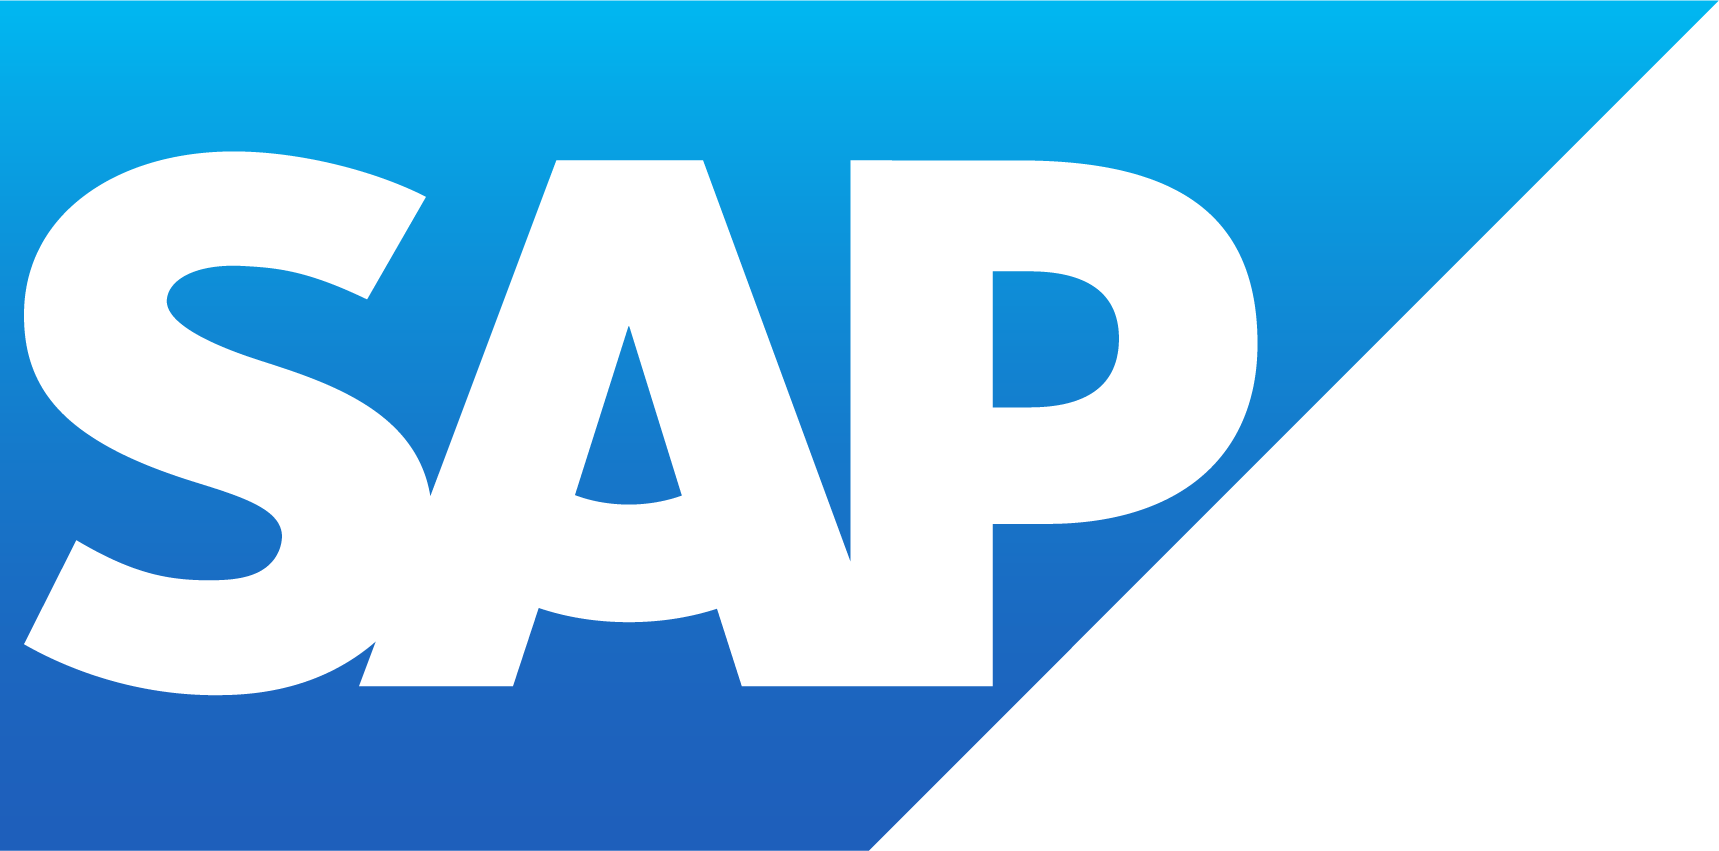 SAP ロゴ